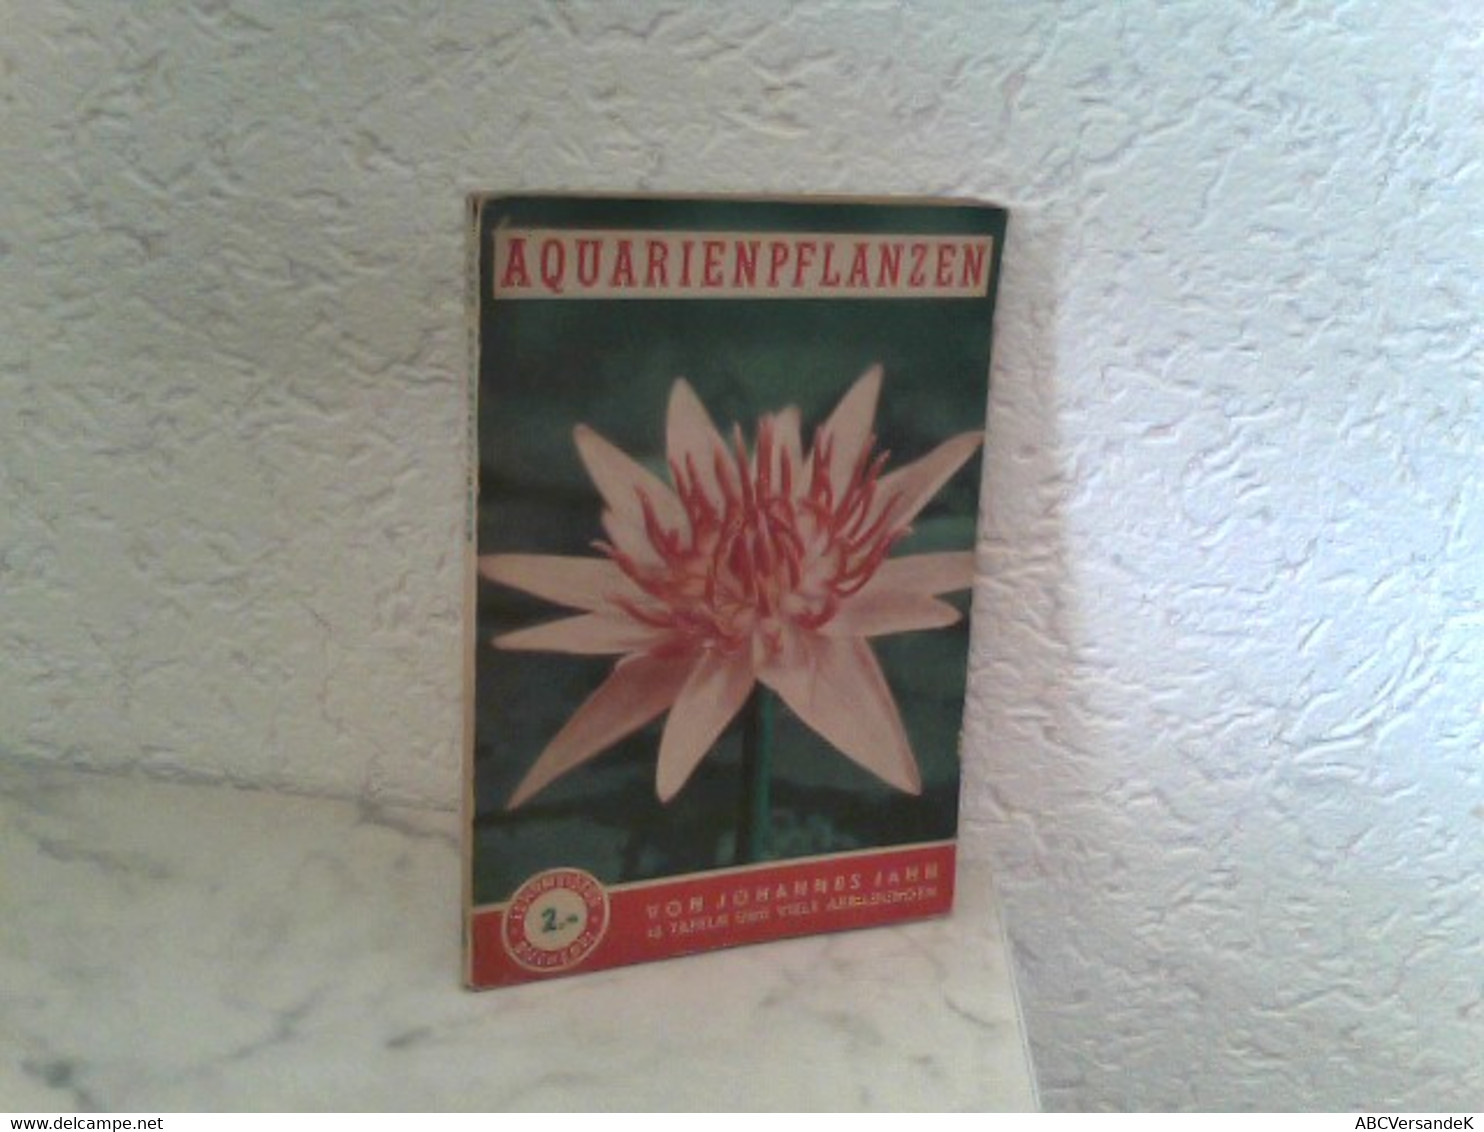 Aquarienpflanzen - Wasser - Und Sumpfpflanzen Für Das Aquarium - Botanik